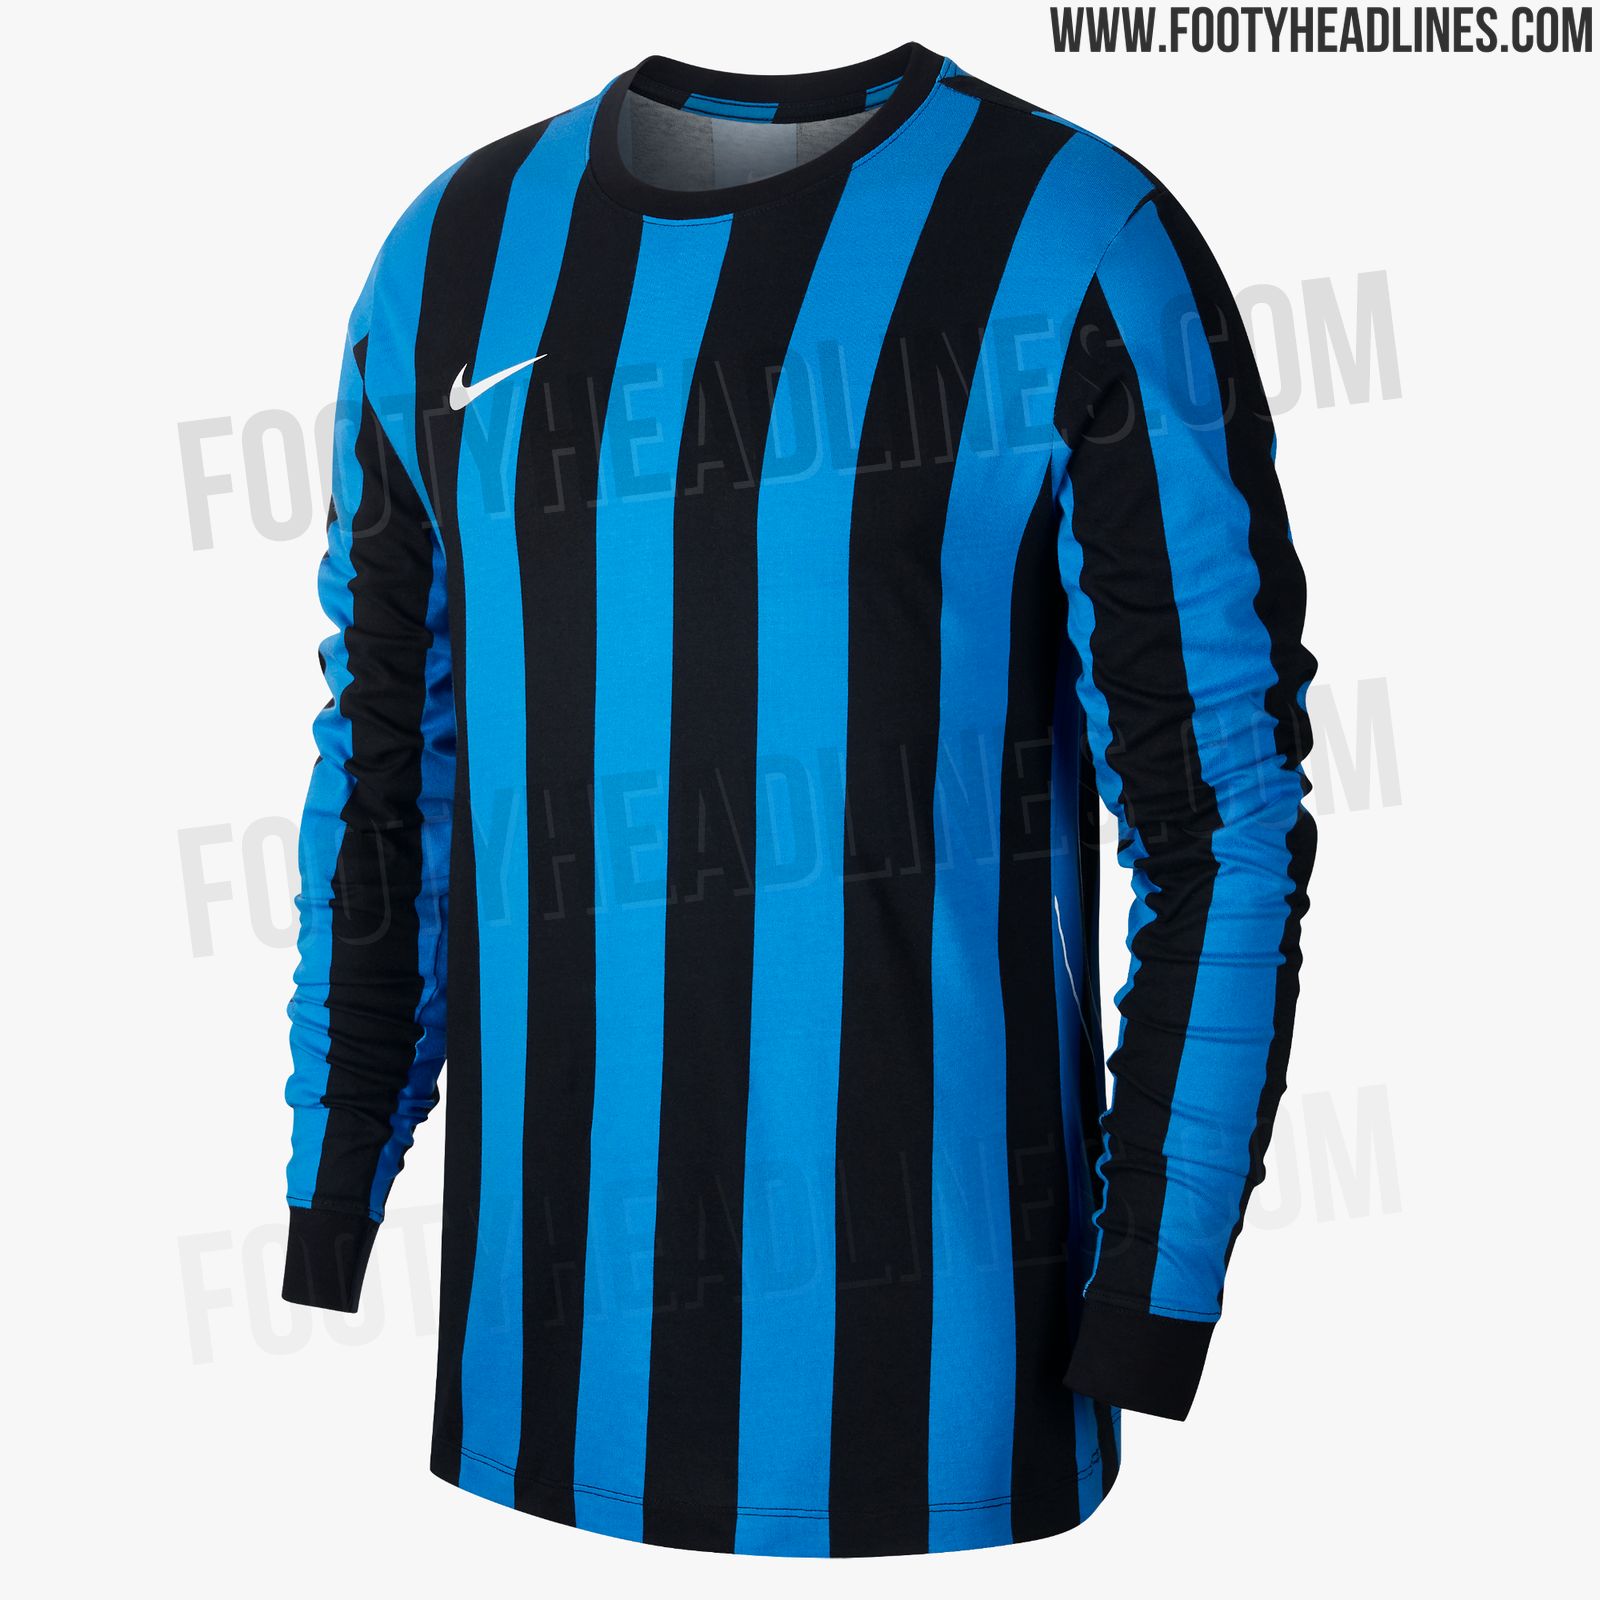 nike-inter-milan-2019-retro-long-sleeve-jersey-2.jpg